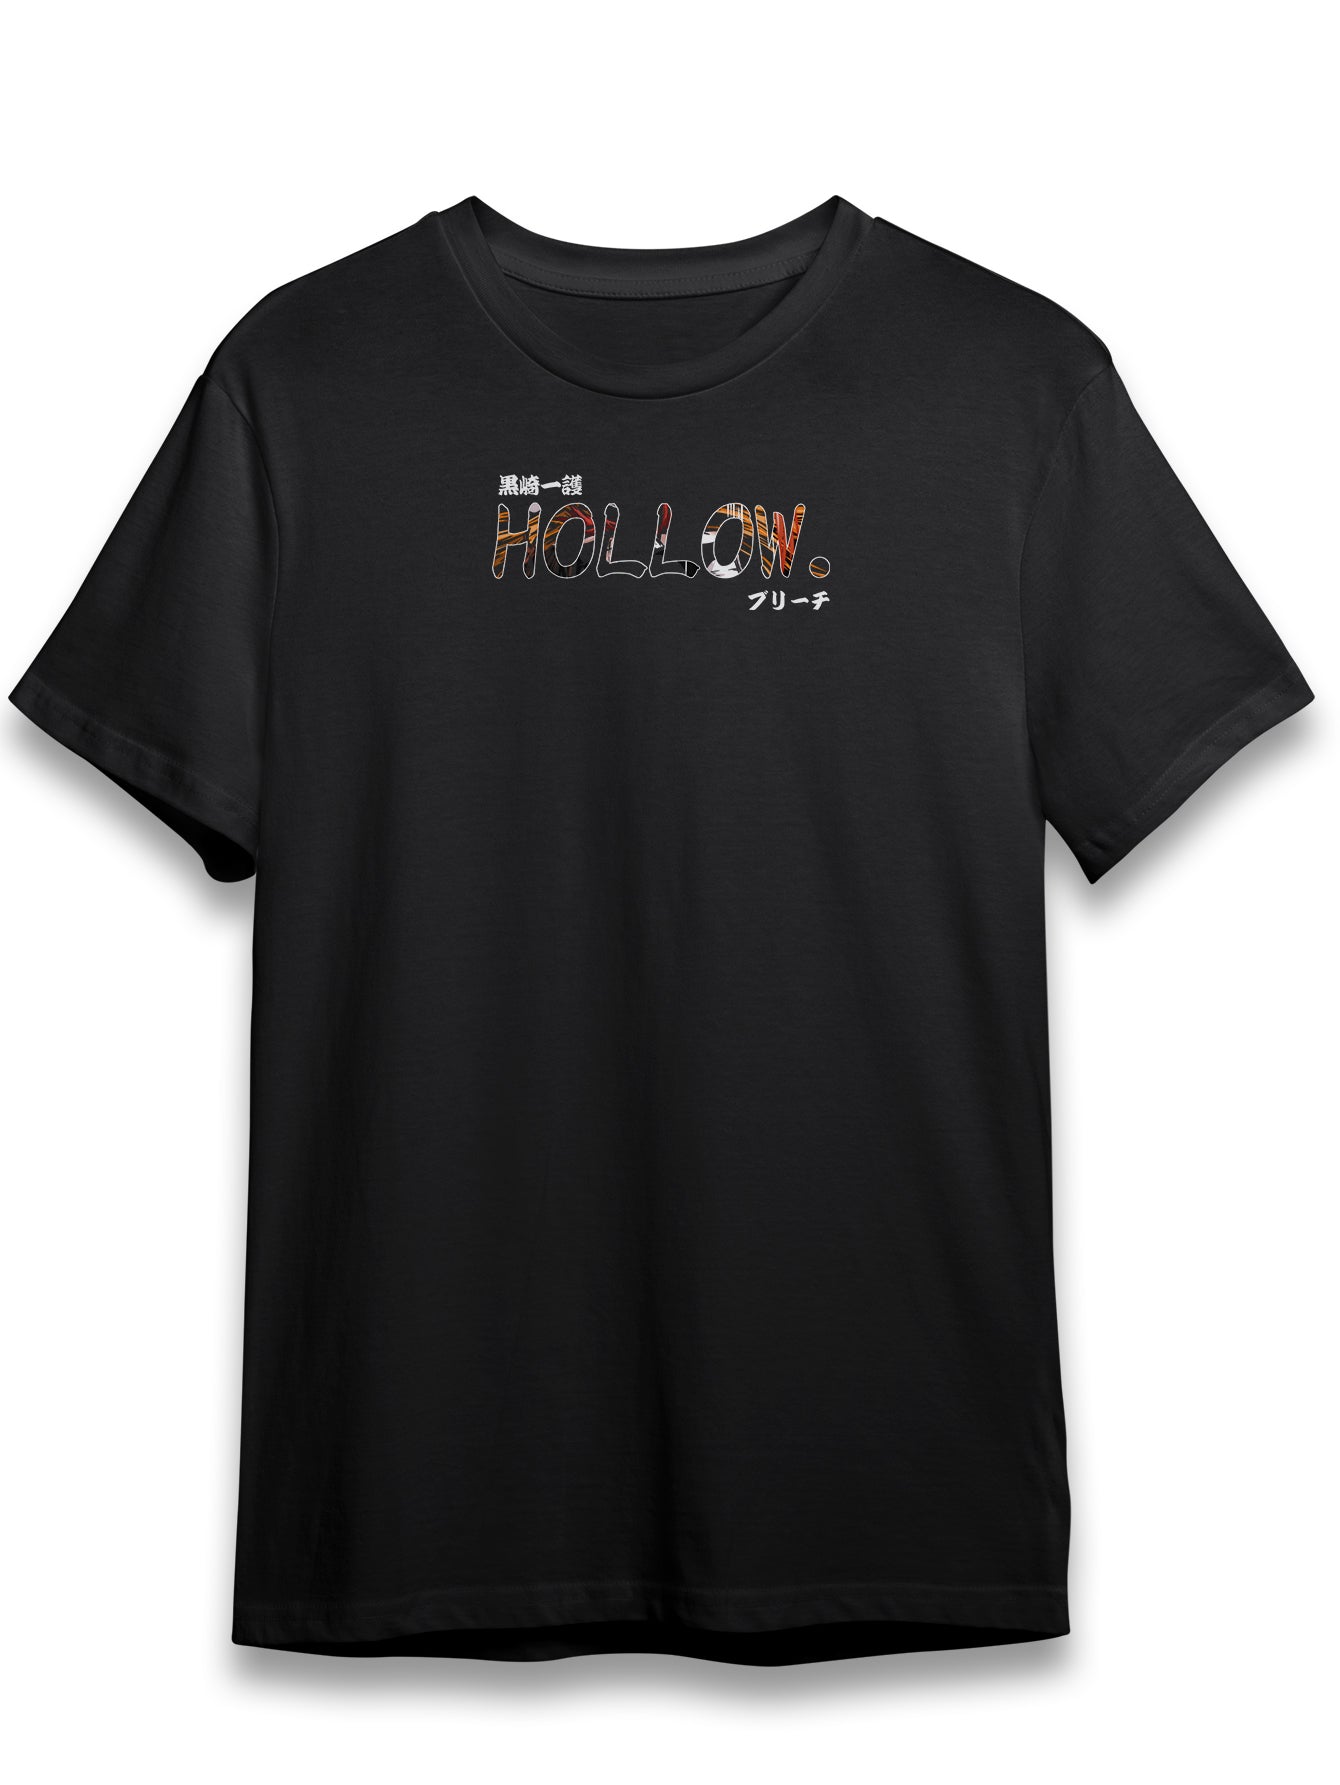 Hollow Blaze Unisex T-Shirt